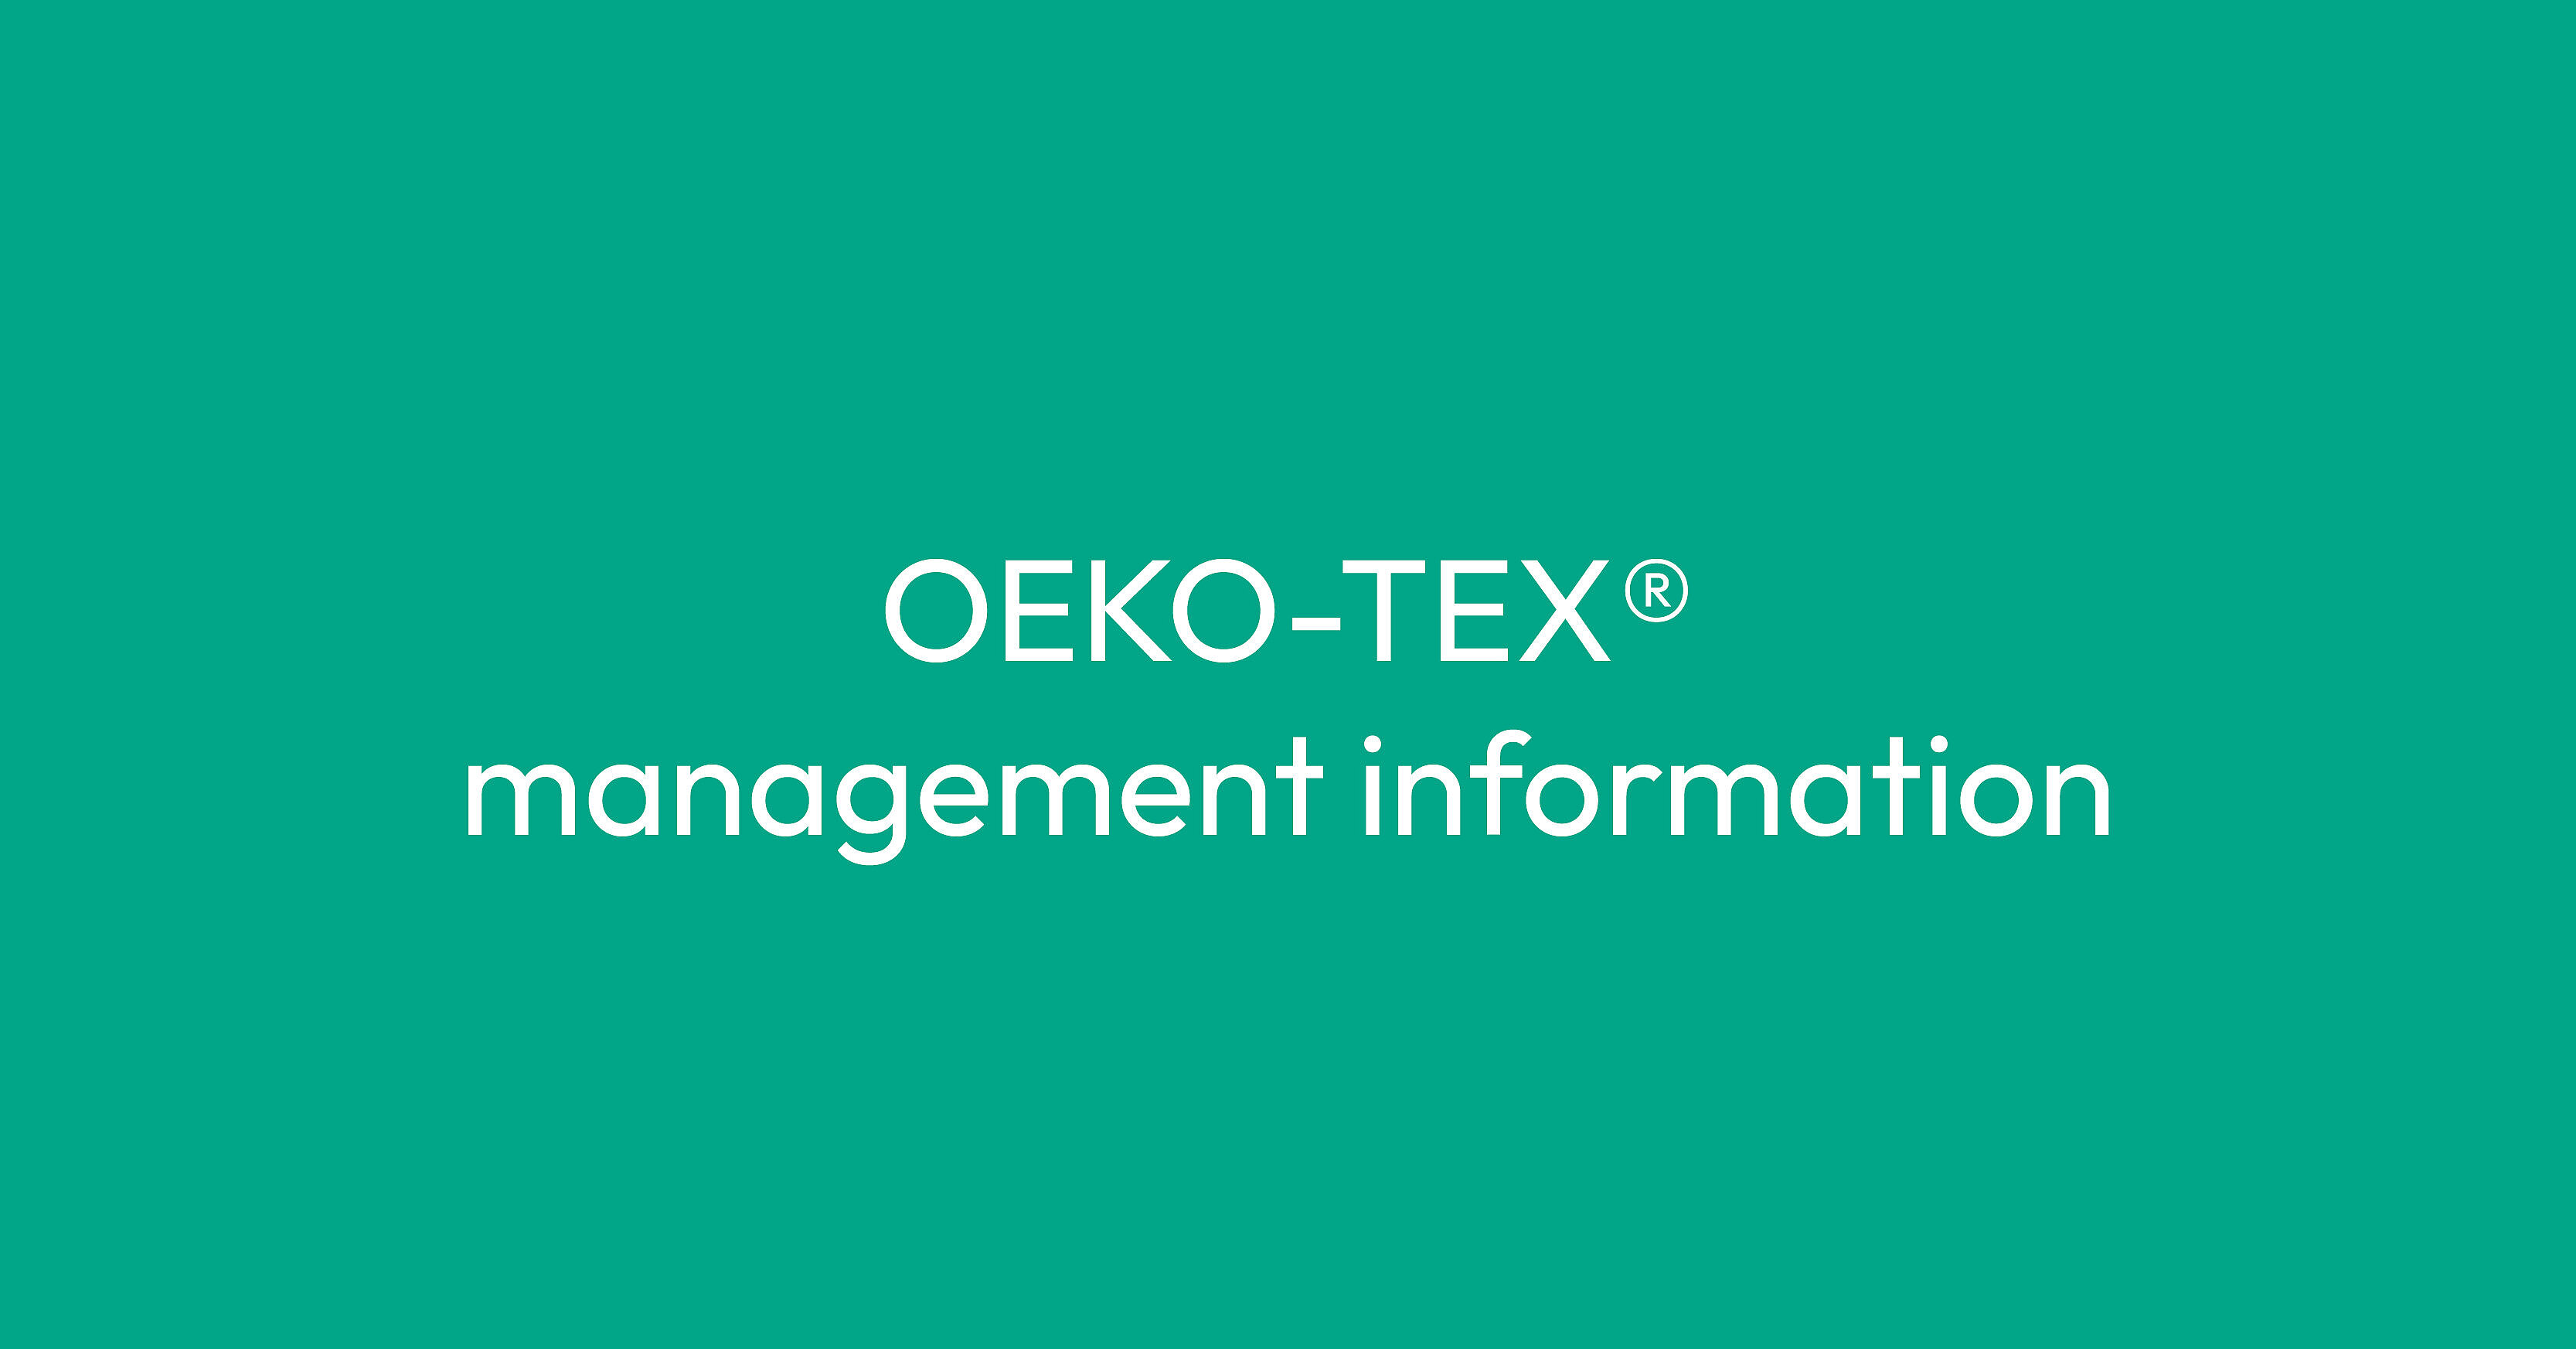 TFT Oeko-Tex certification